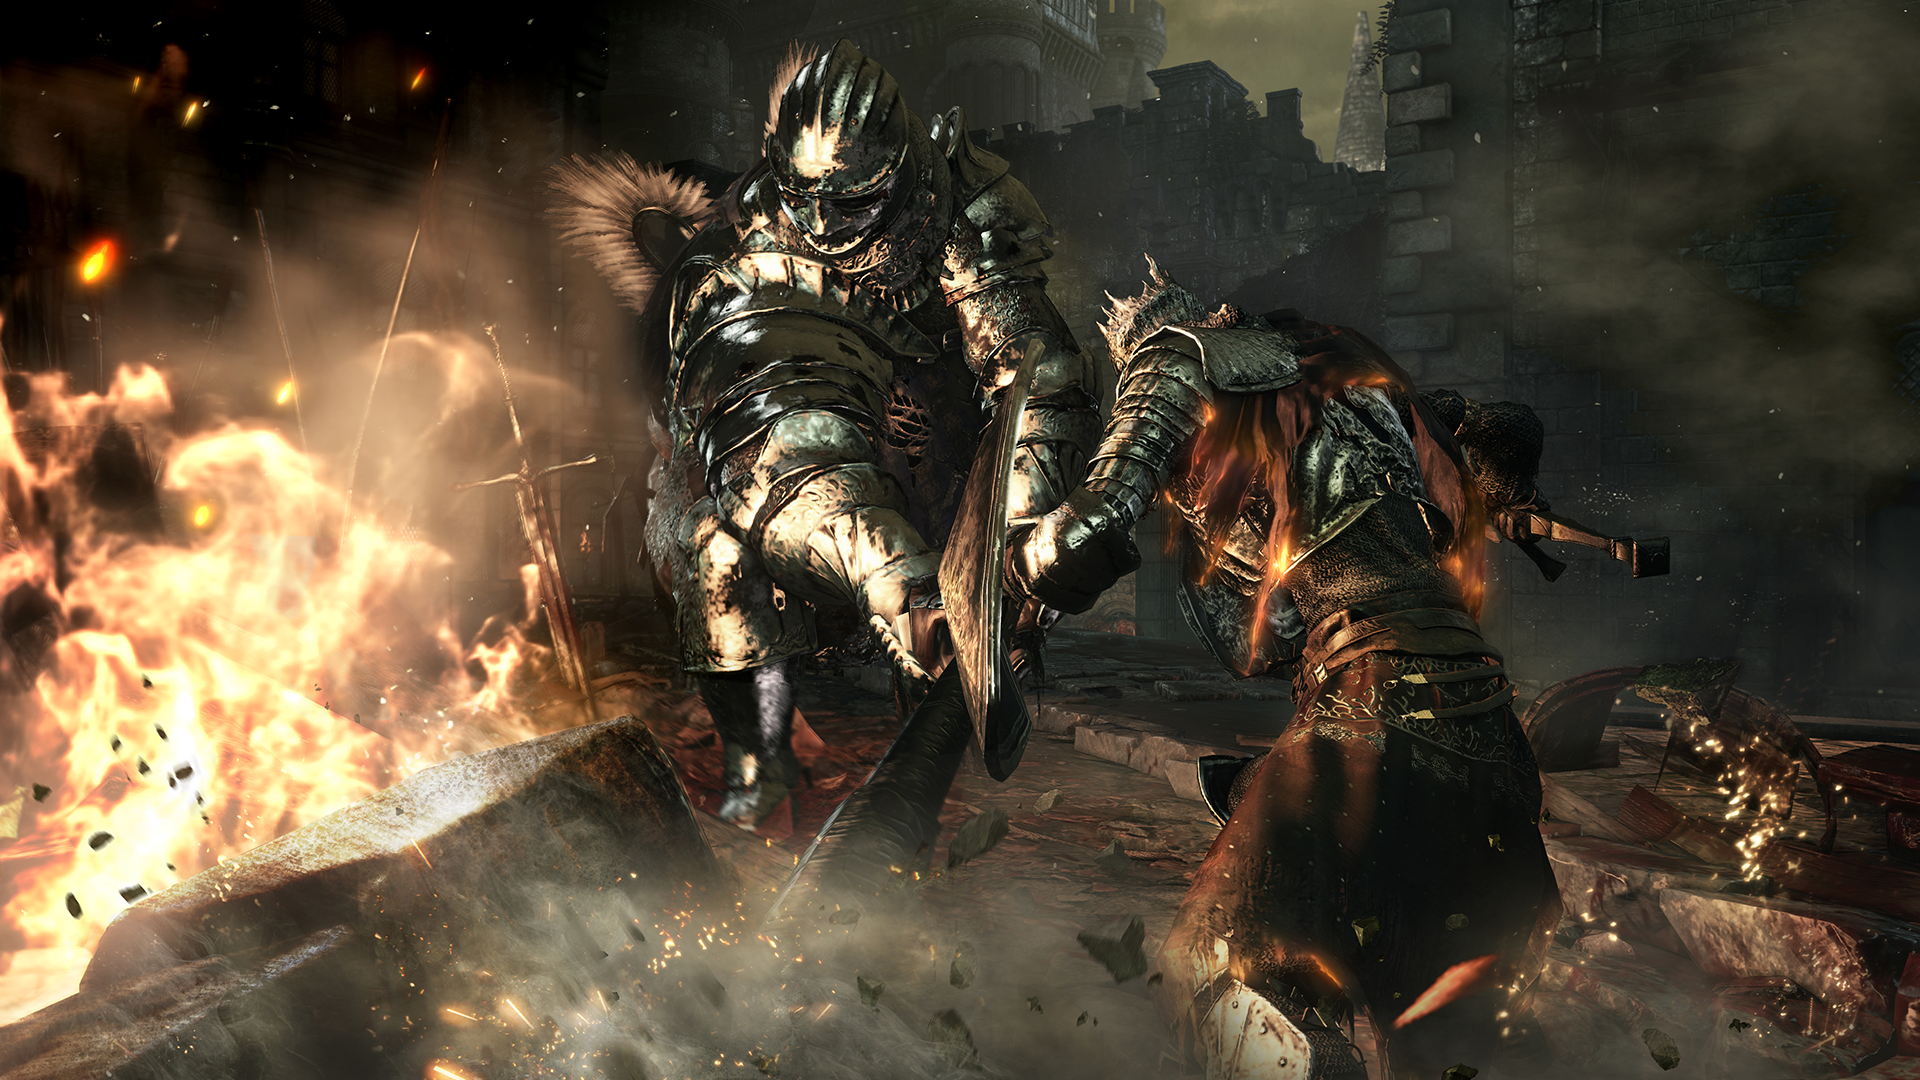 Dark Souls III. Premierowa zajawka kompletnej edycji gry, przez którą płakaliście krwią